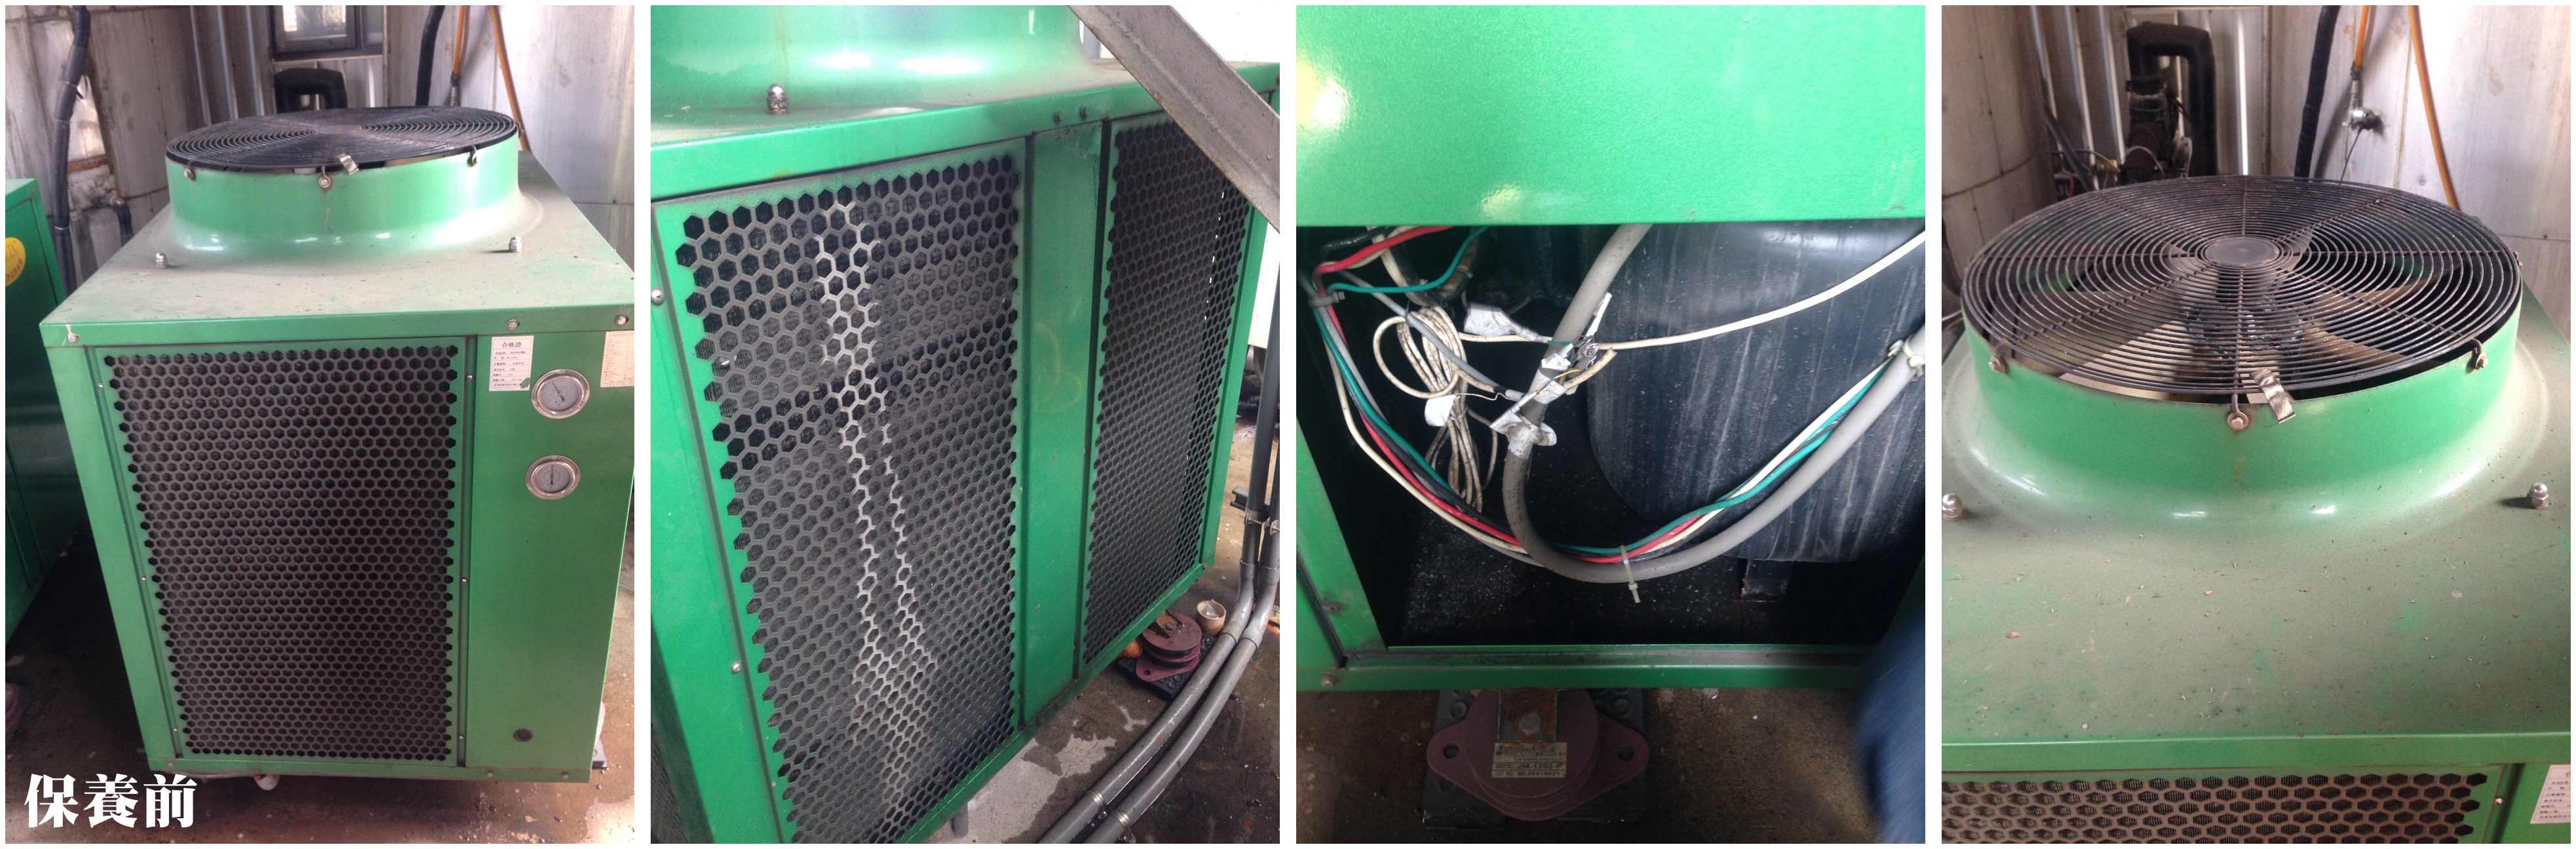 熱泵主機 保養前熱水器安裝實績